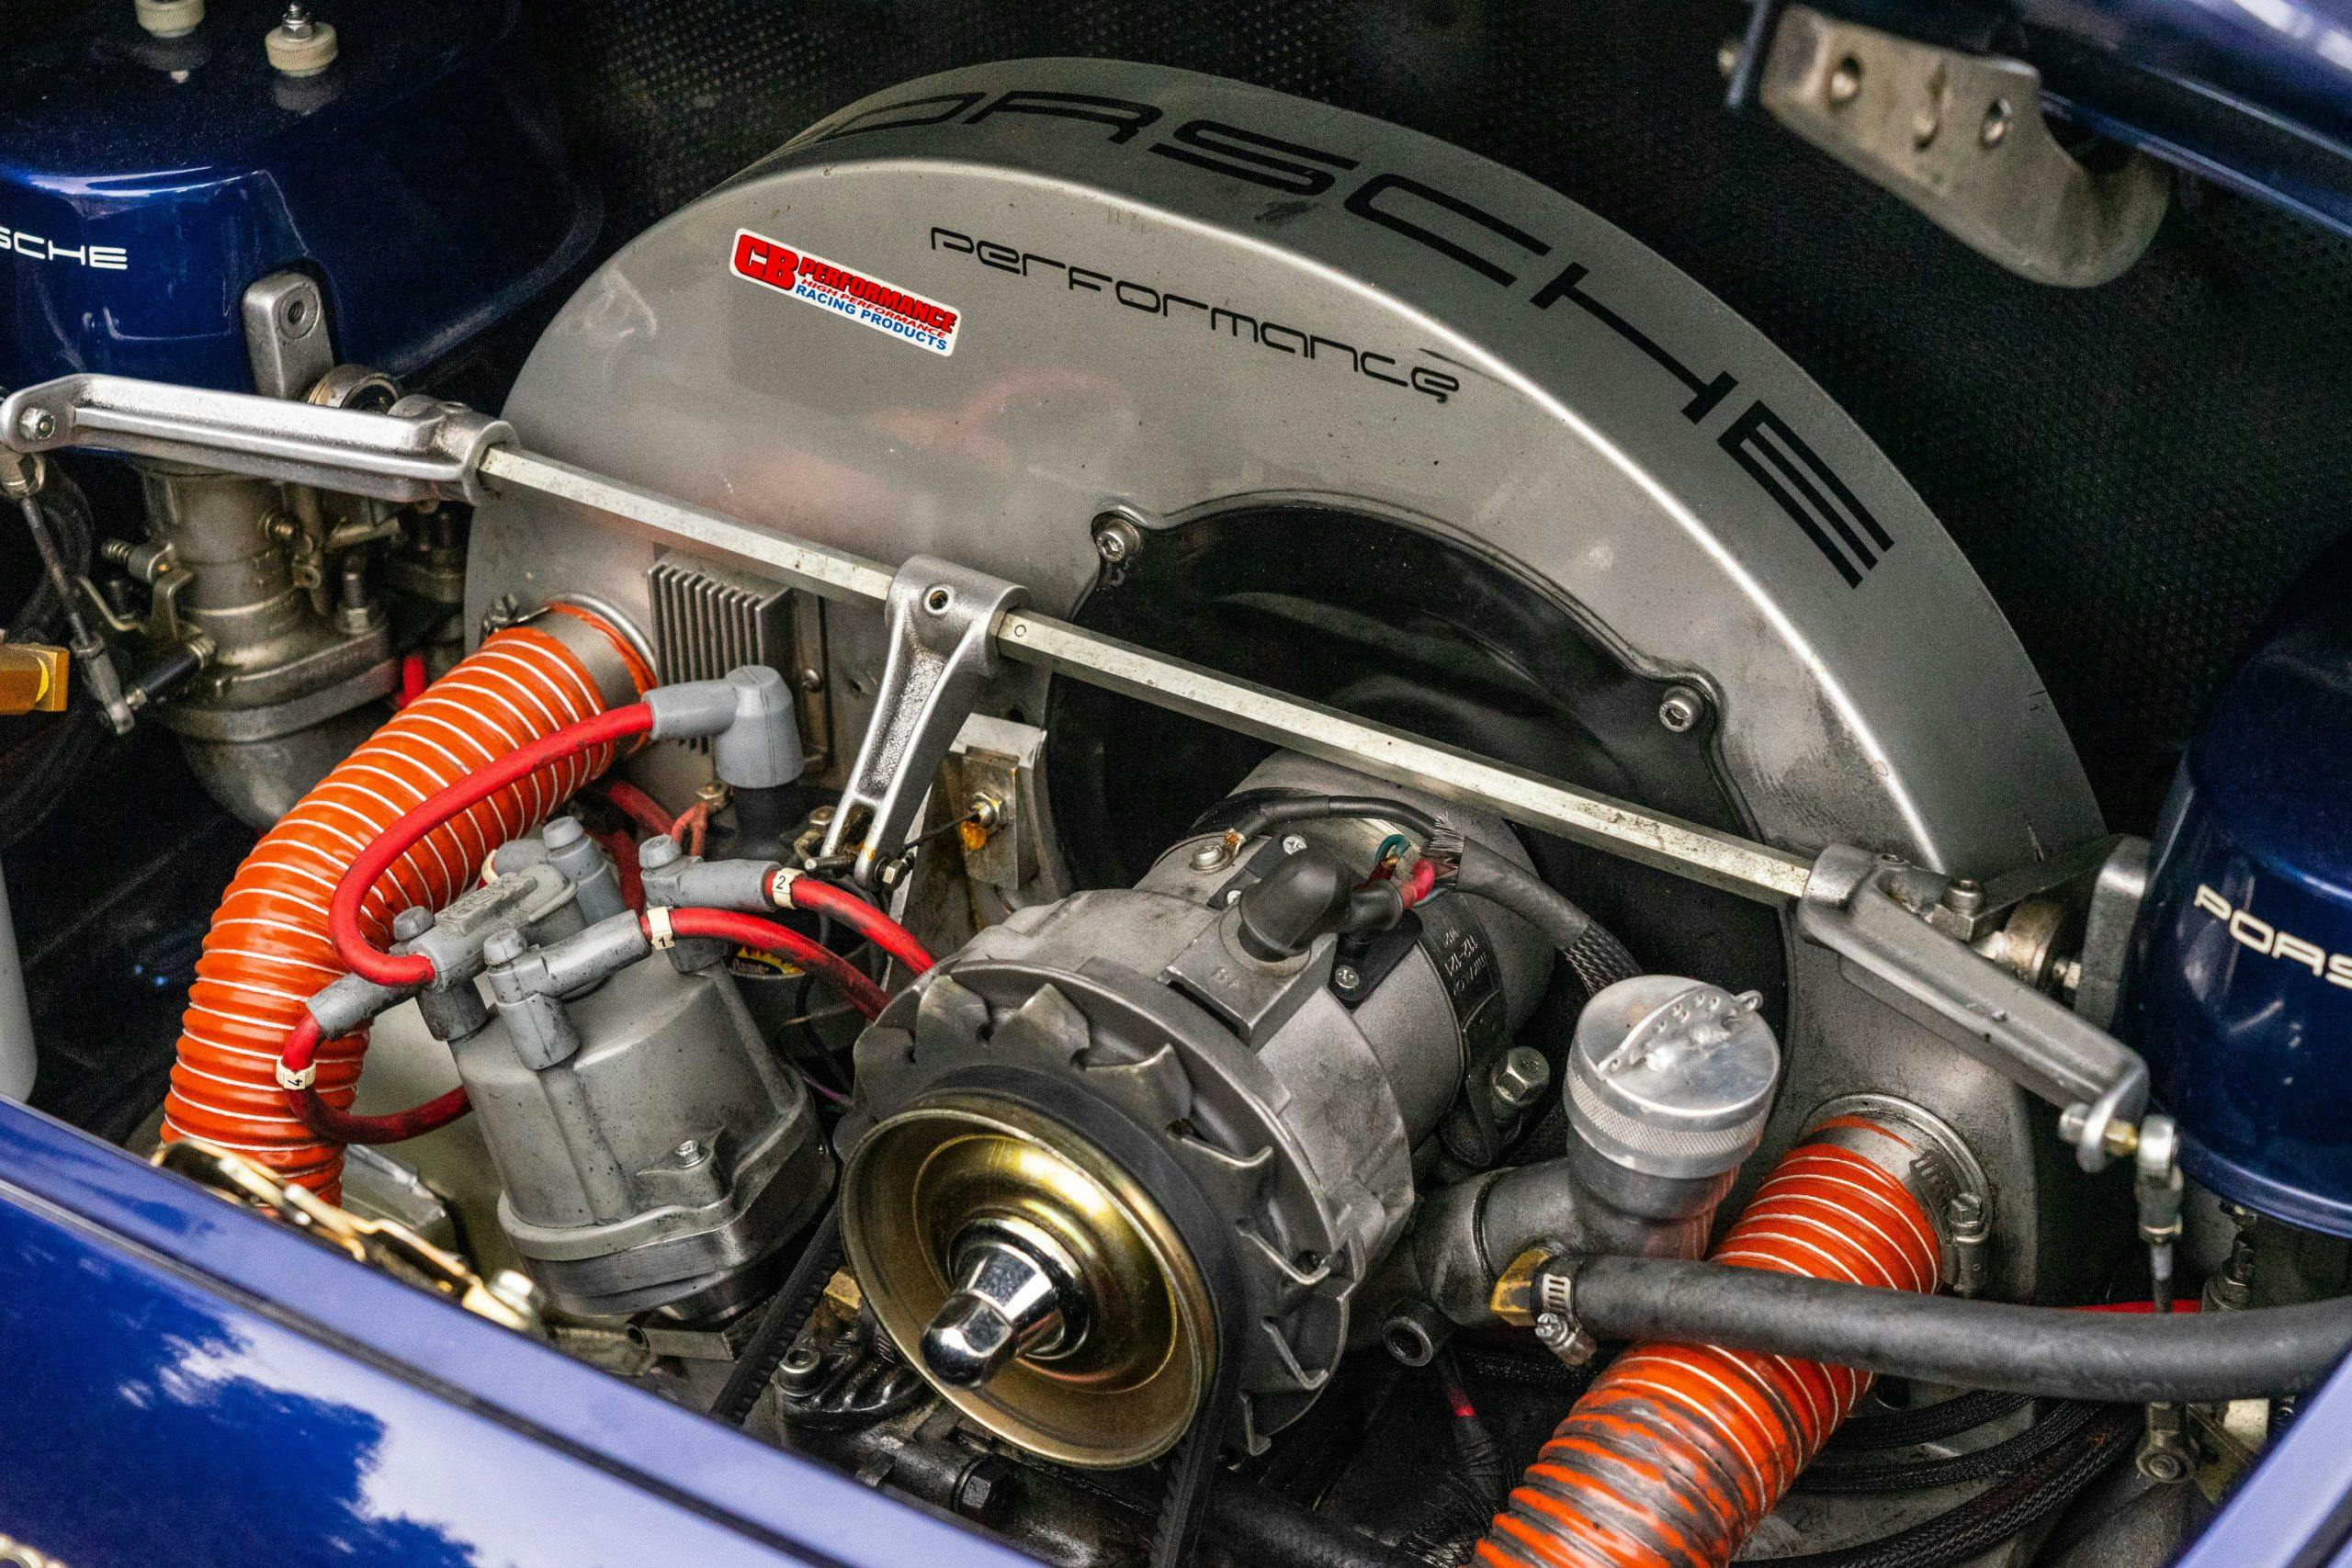 2010 Intermeccanica Roadster Porsche 356 replica engine